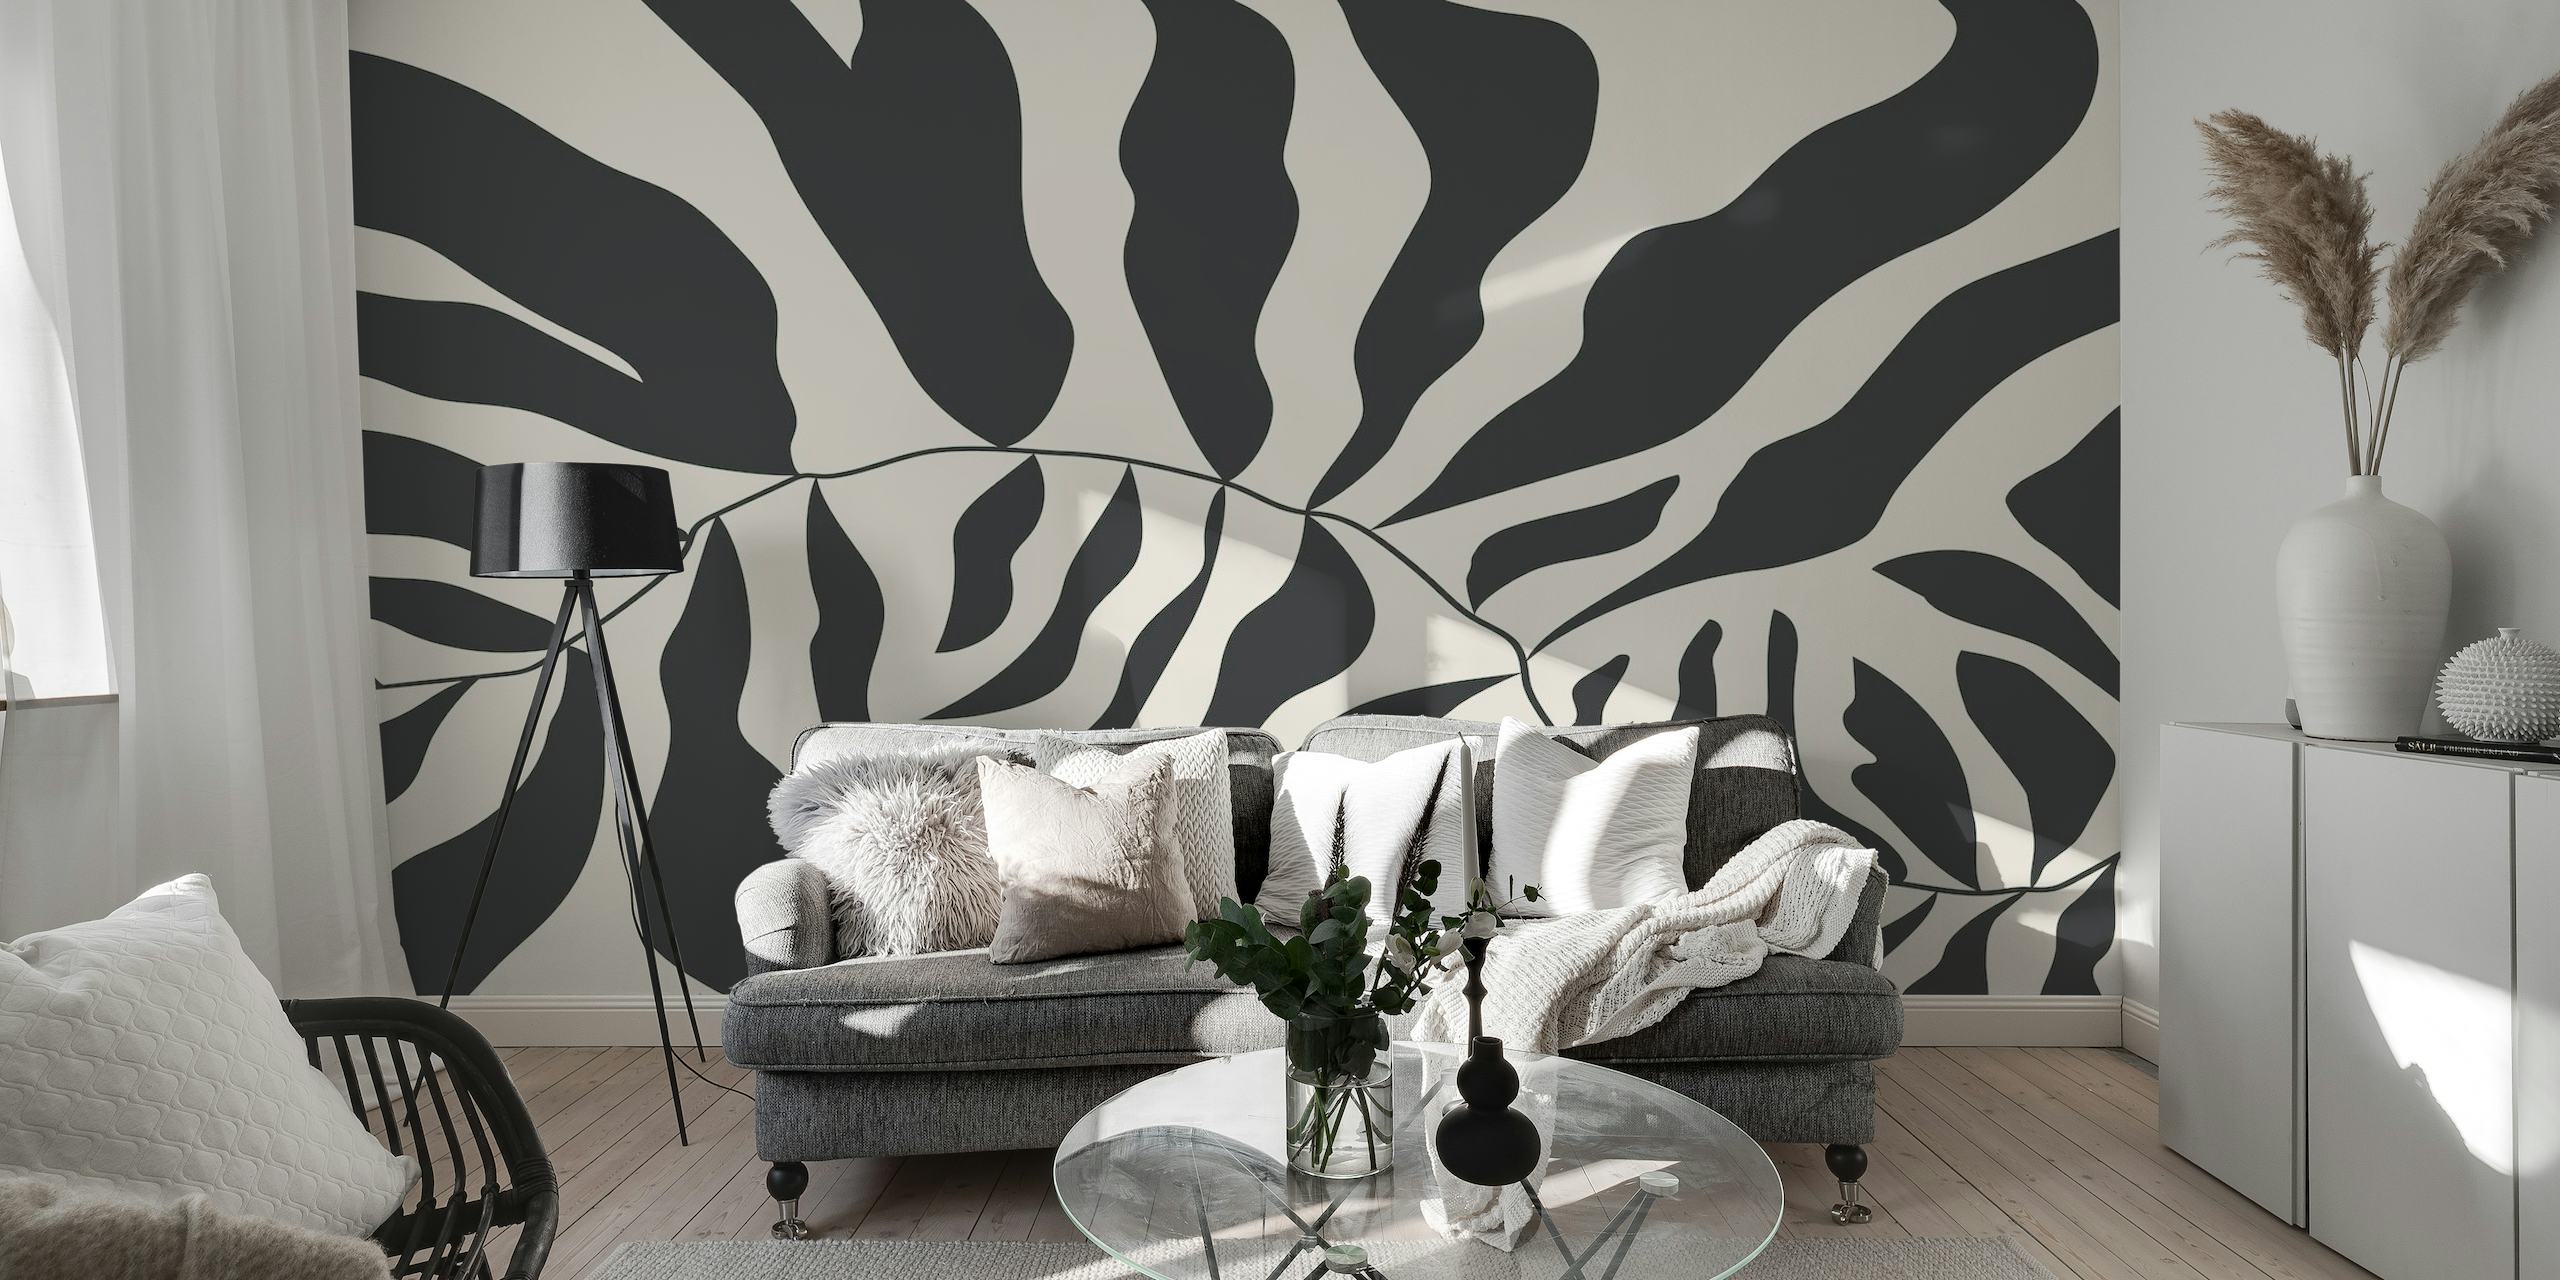 Svart og hvitt abstrakt veggmaleri i Matisse-stil som viser organiske former